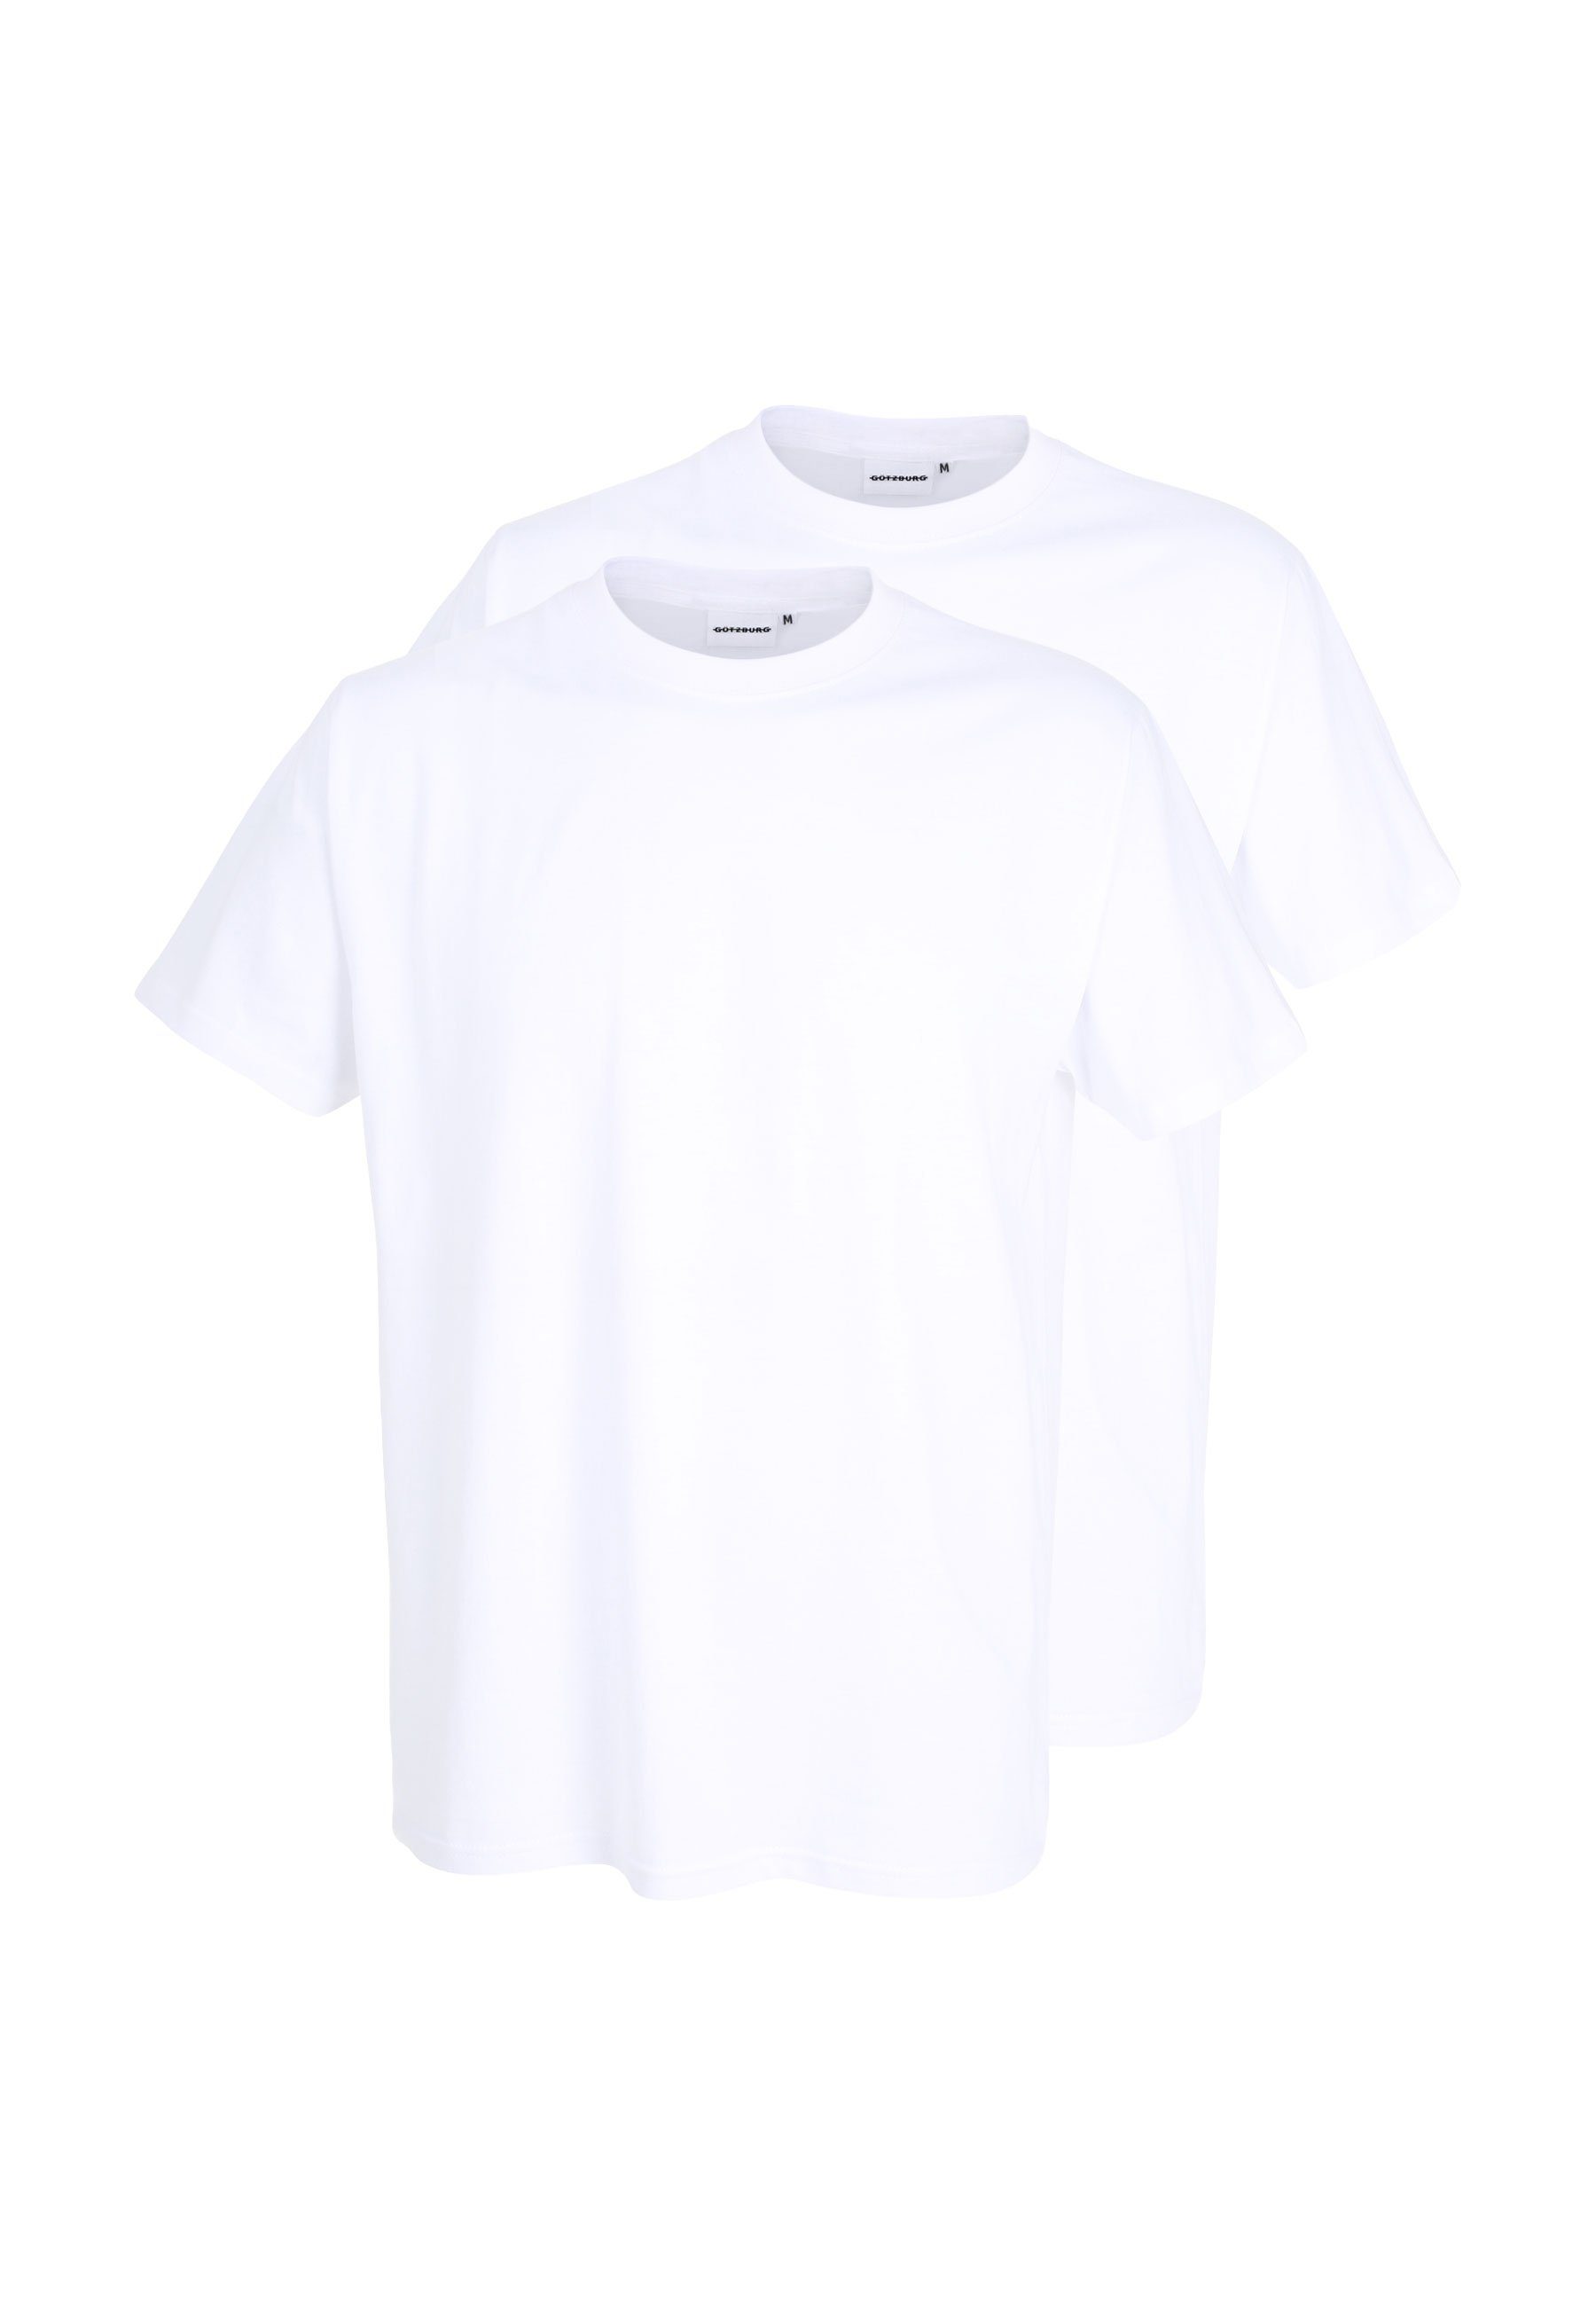 GÖTZBURG Unterziehshirt GÖTZBURG T-Shirt Herren (2-St) Pack uni 2er weiß weiss